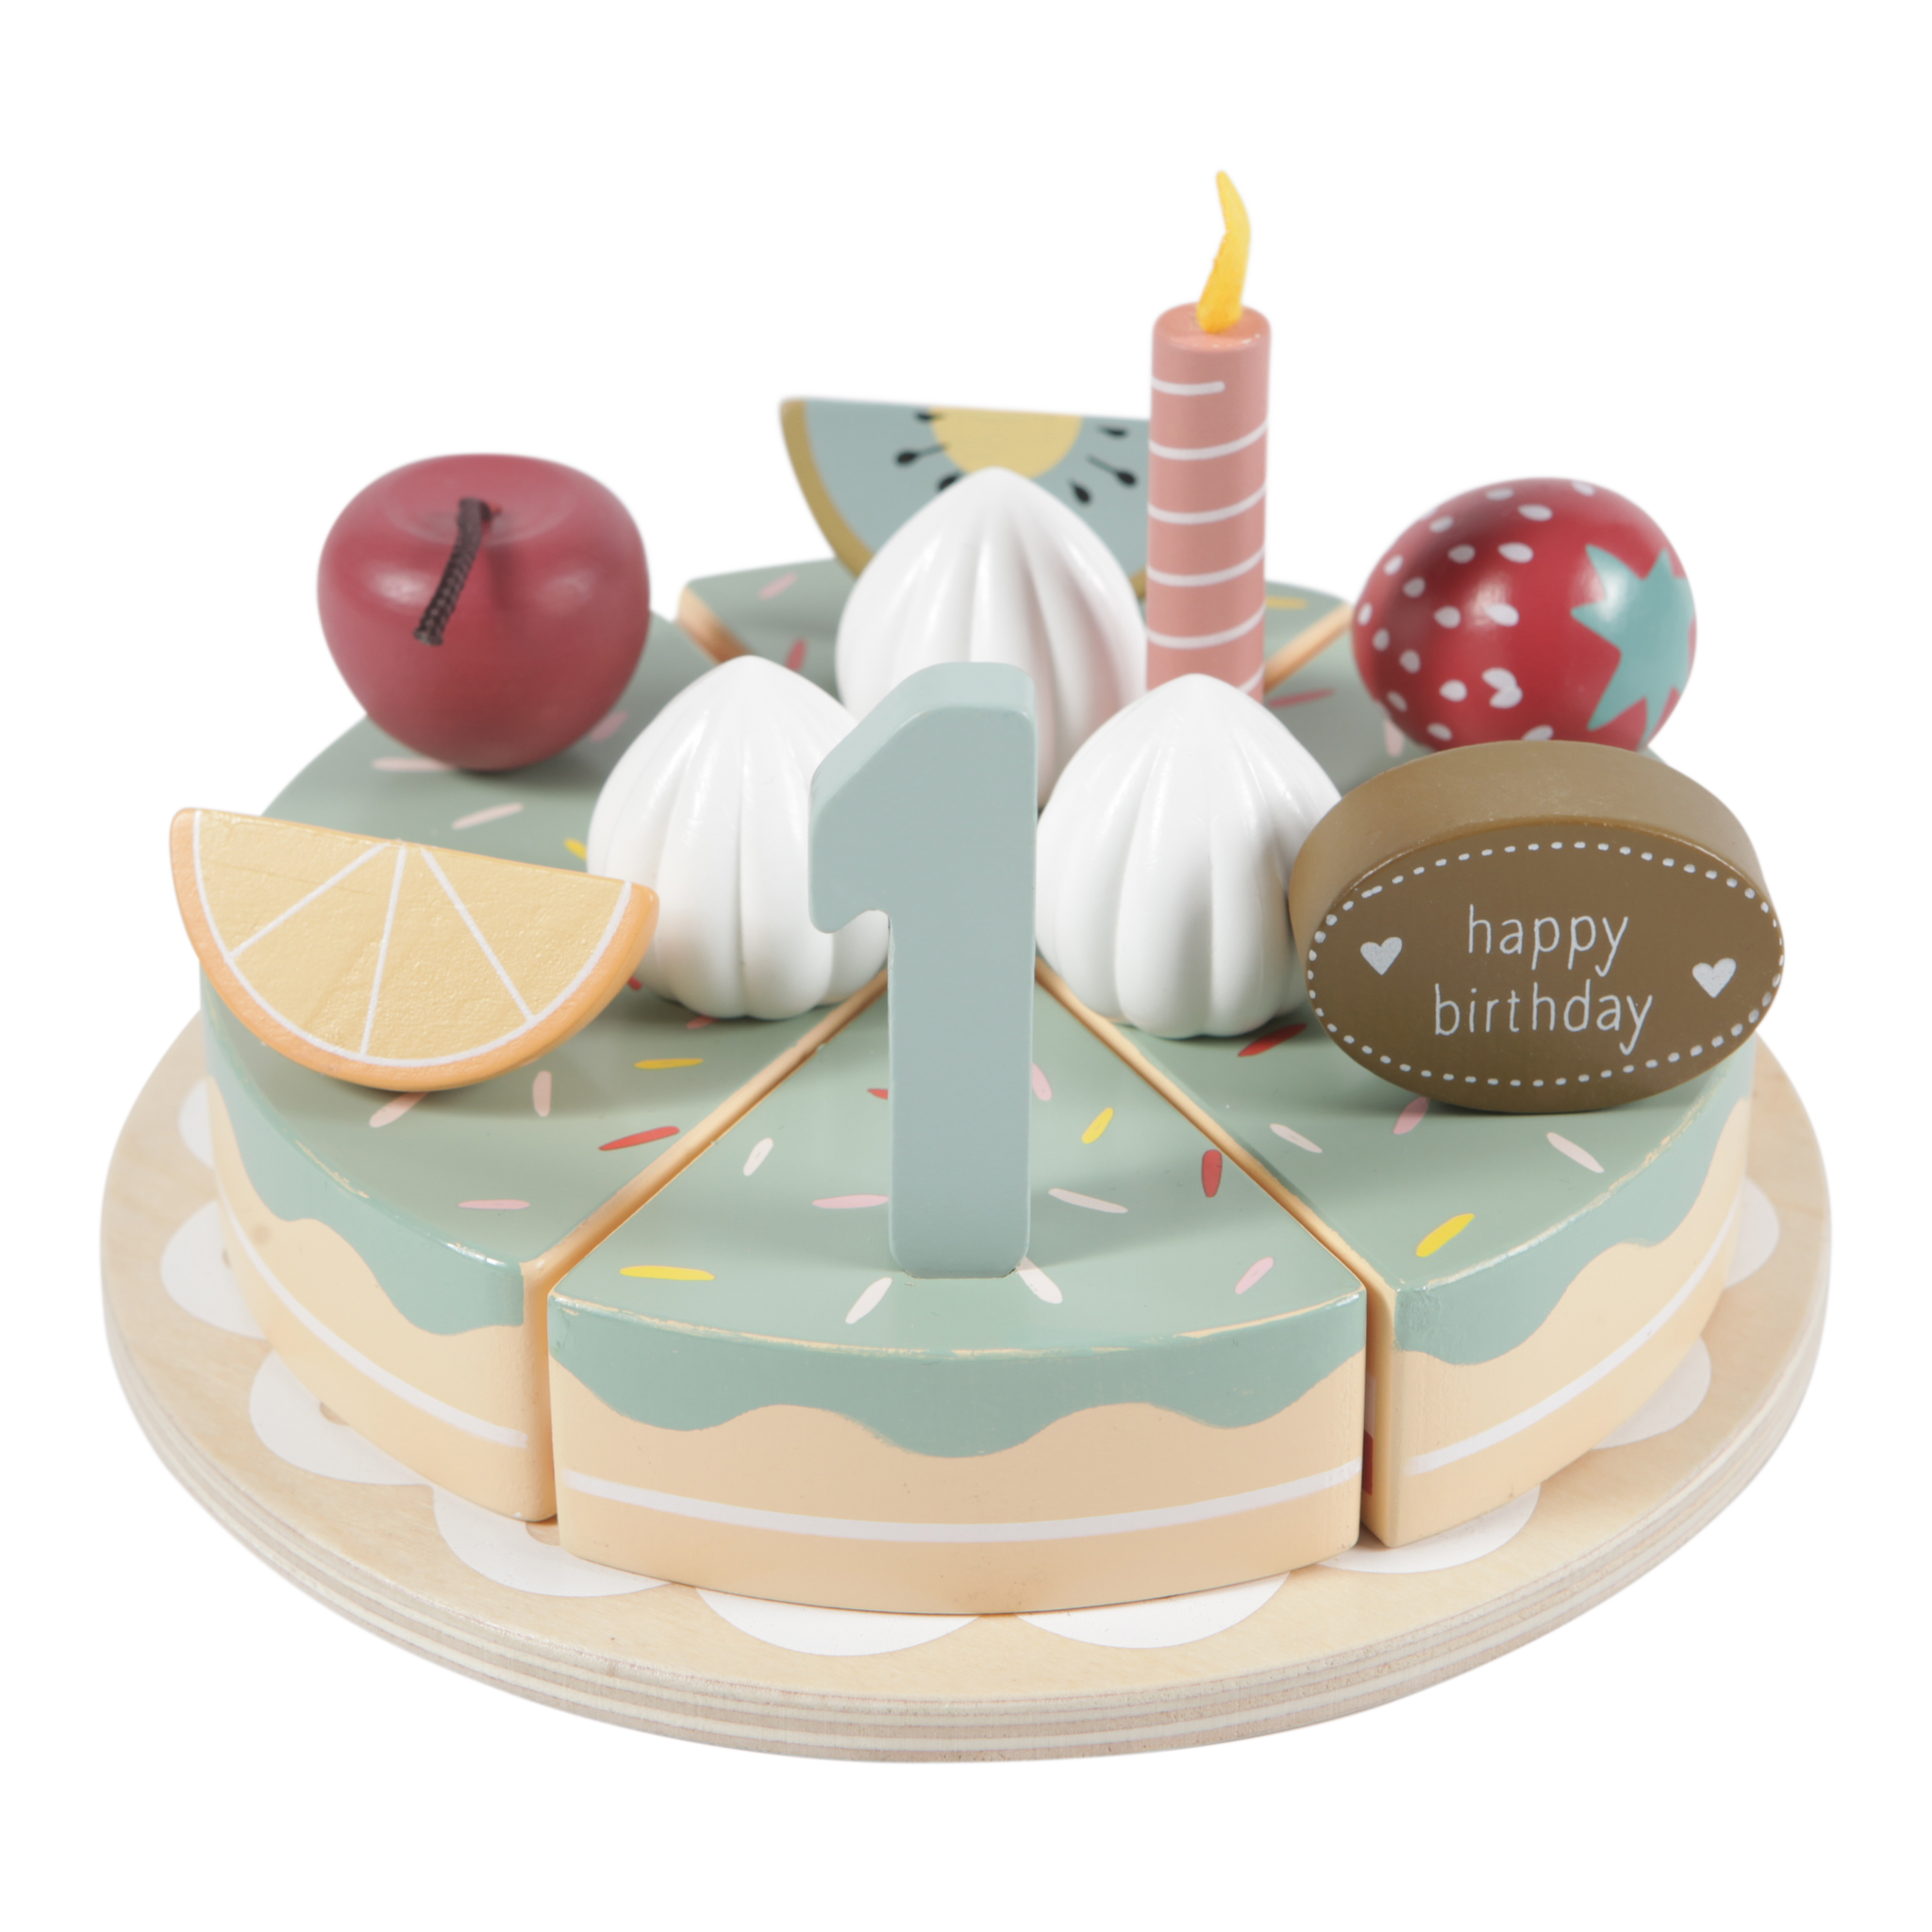 Little Dutch Wooden Birthday Cake XL